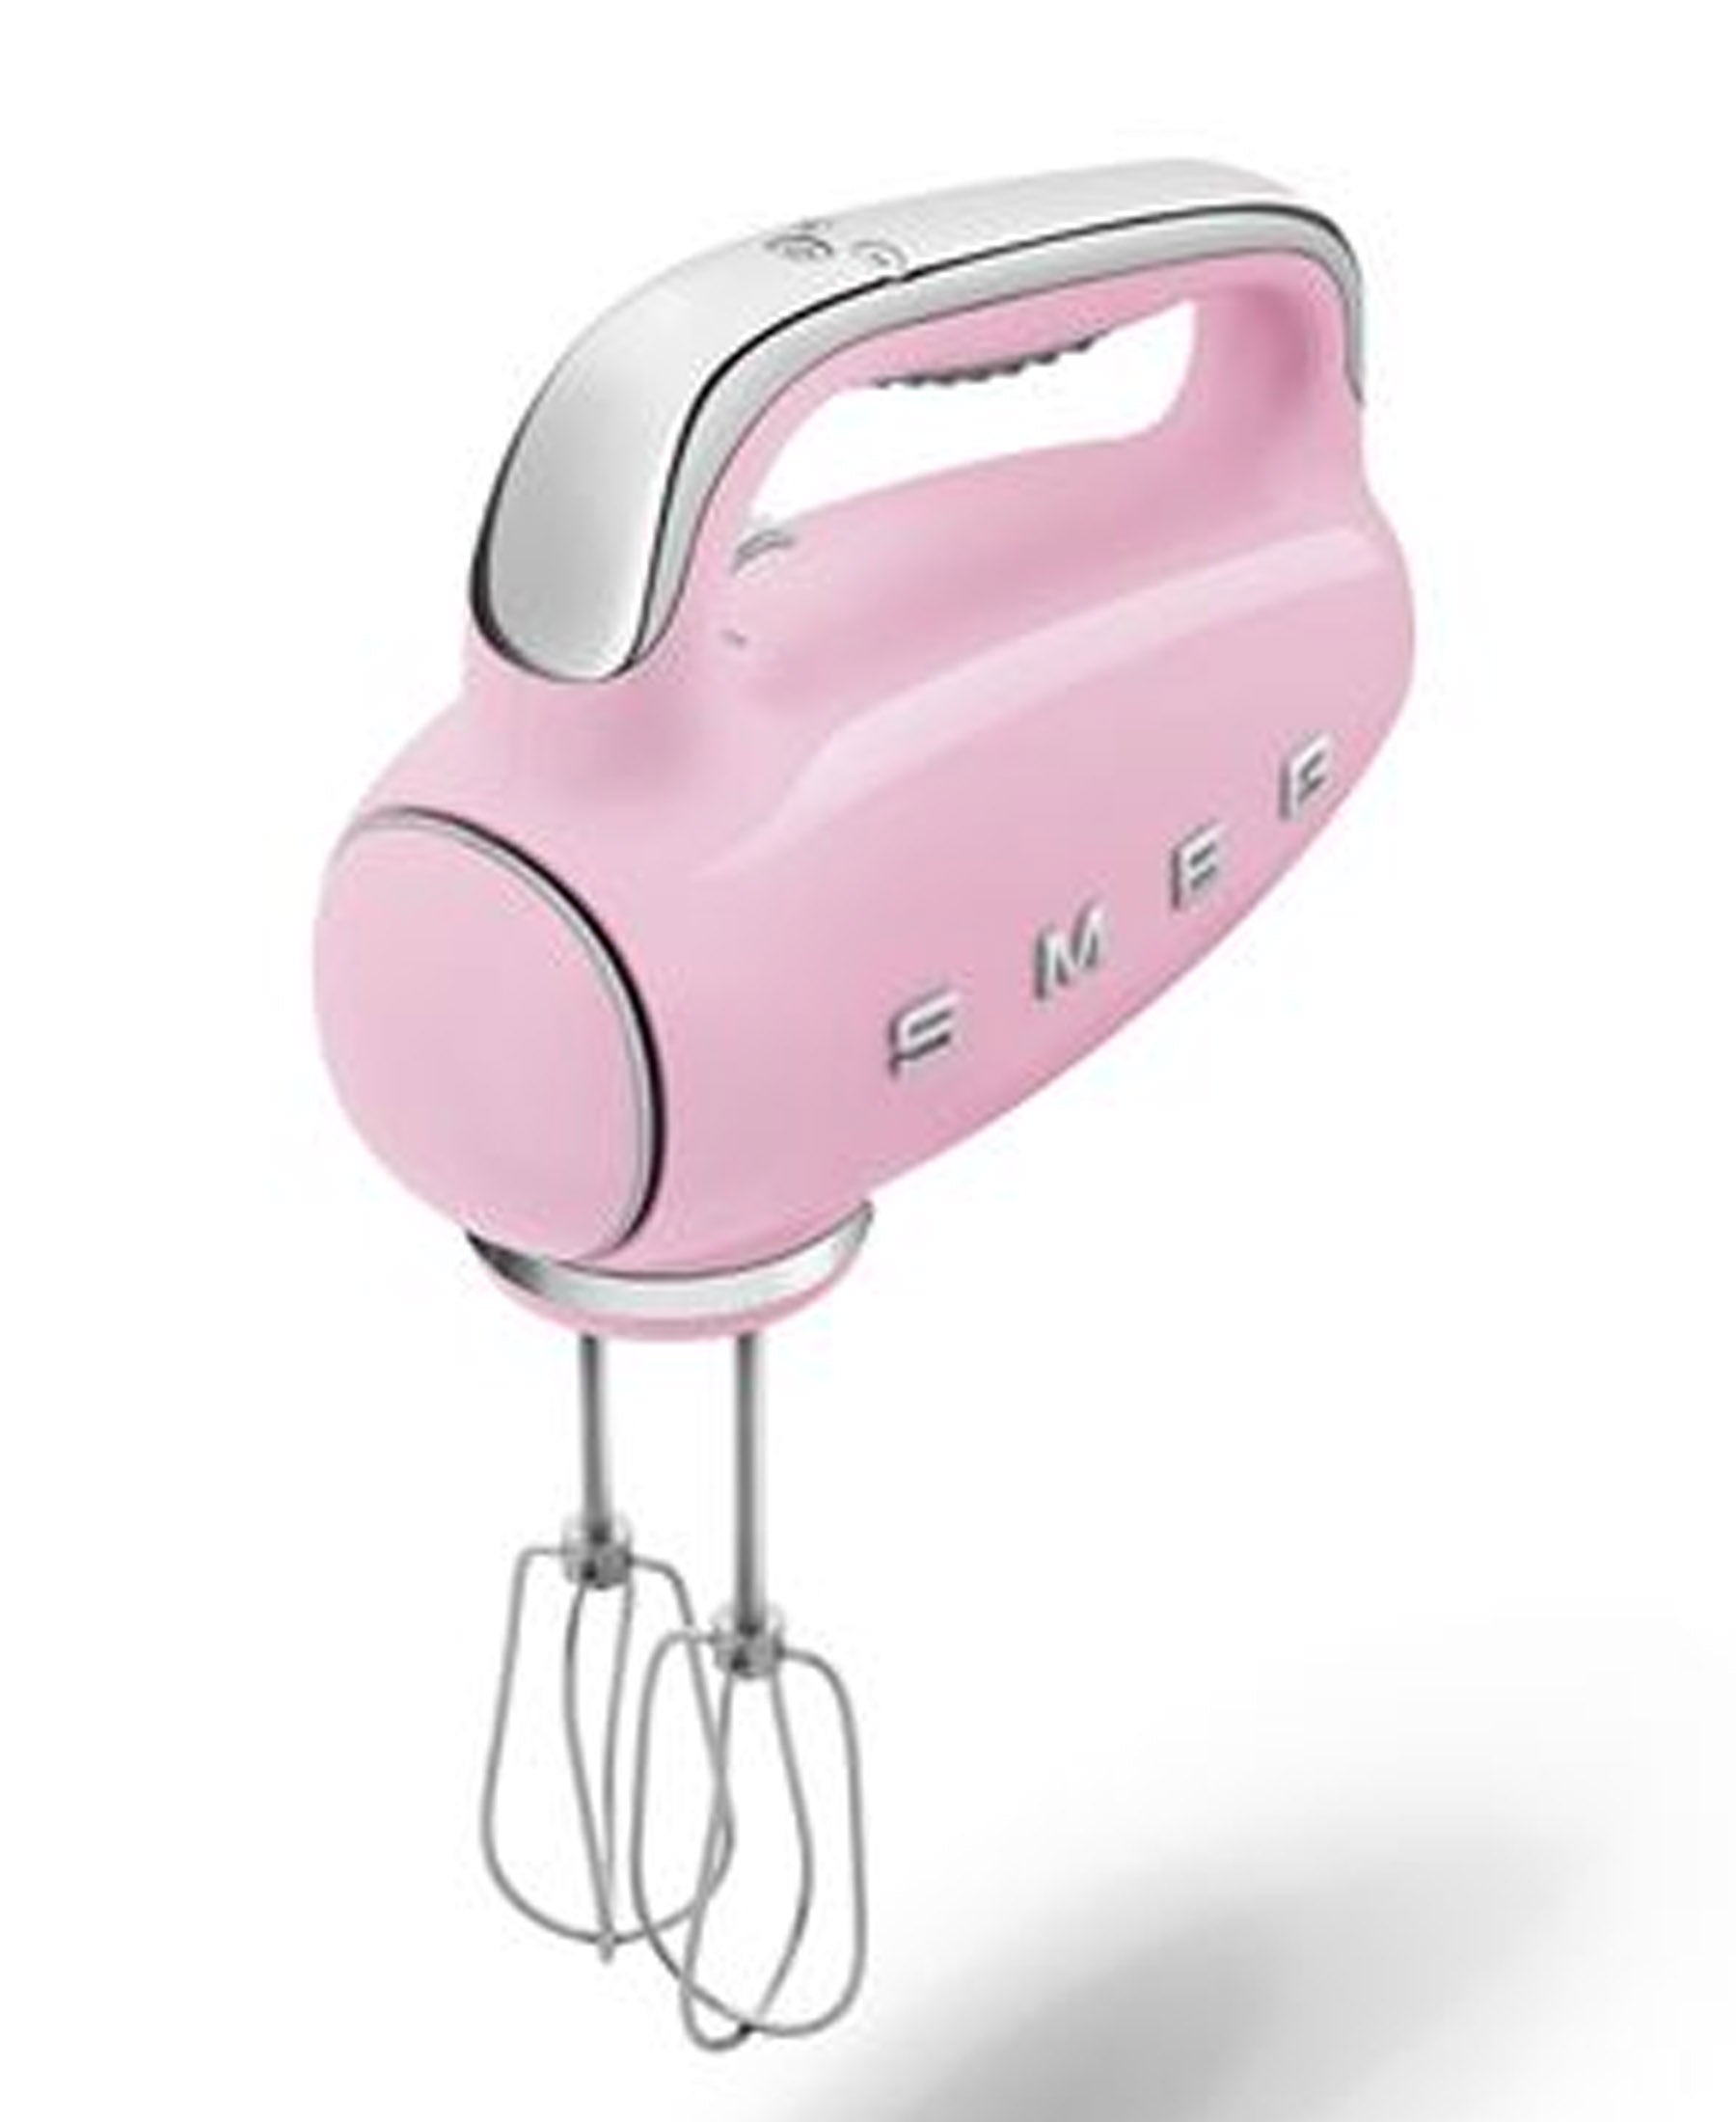 Smeg Retro 50's Style Hand Mixer 250W - Pink